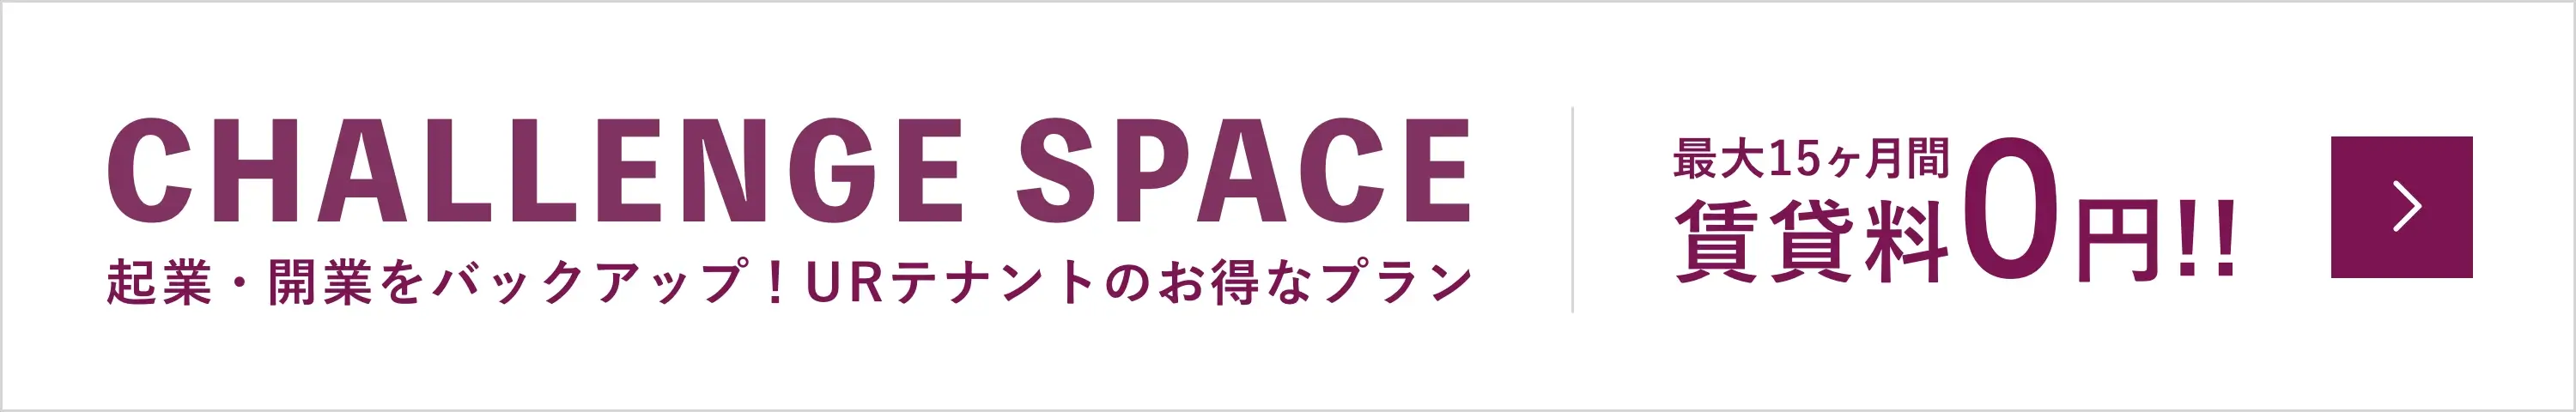 CHALLENGE SPACE 企業・開業をバックアップ!URテナントのお得なプラン。最大15ヶ月間賃貸料0円!!